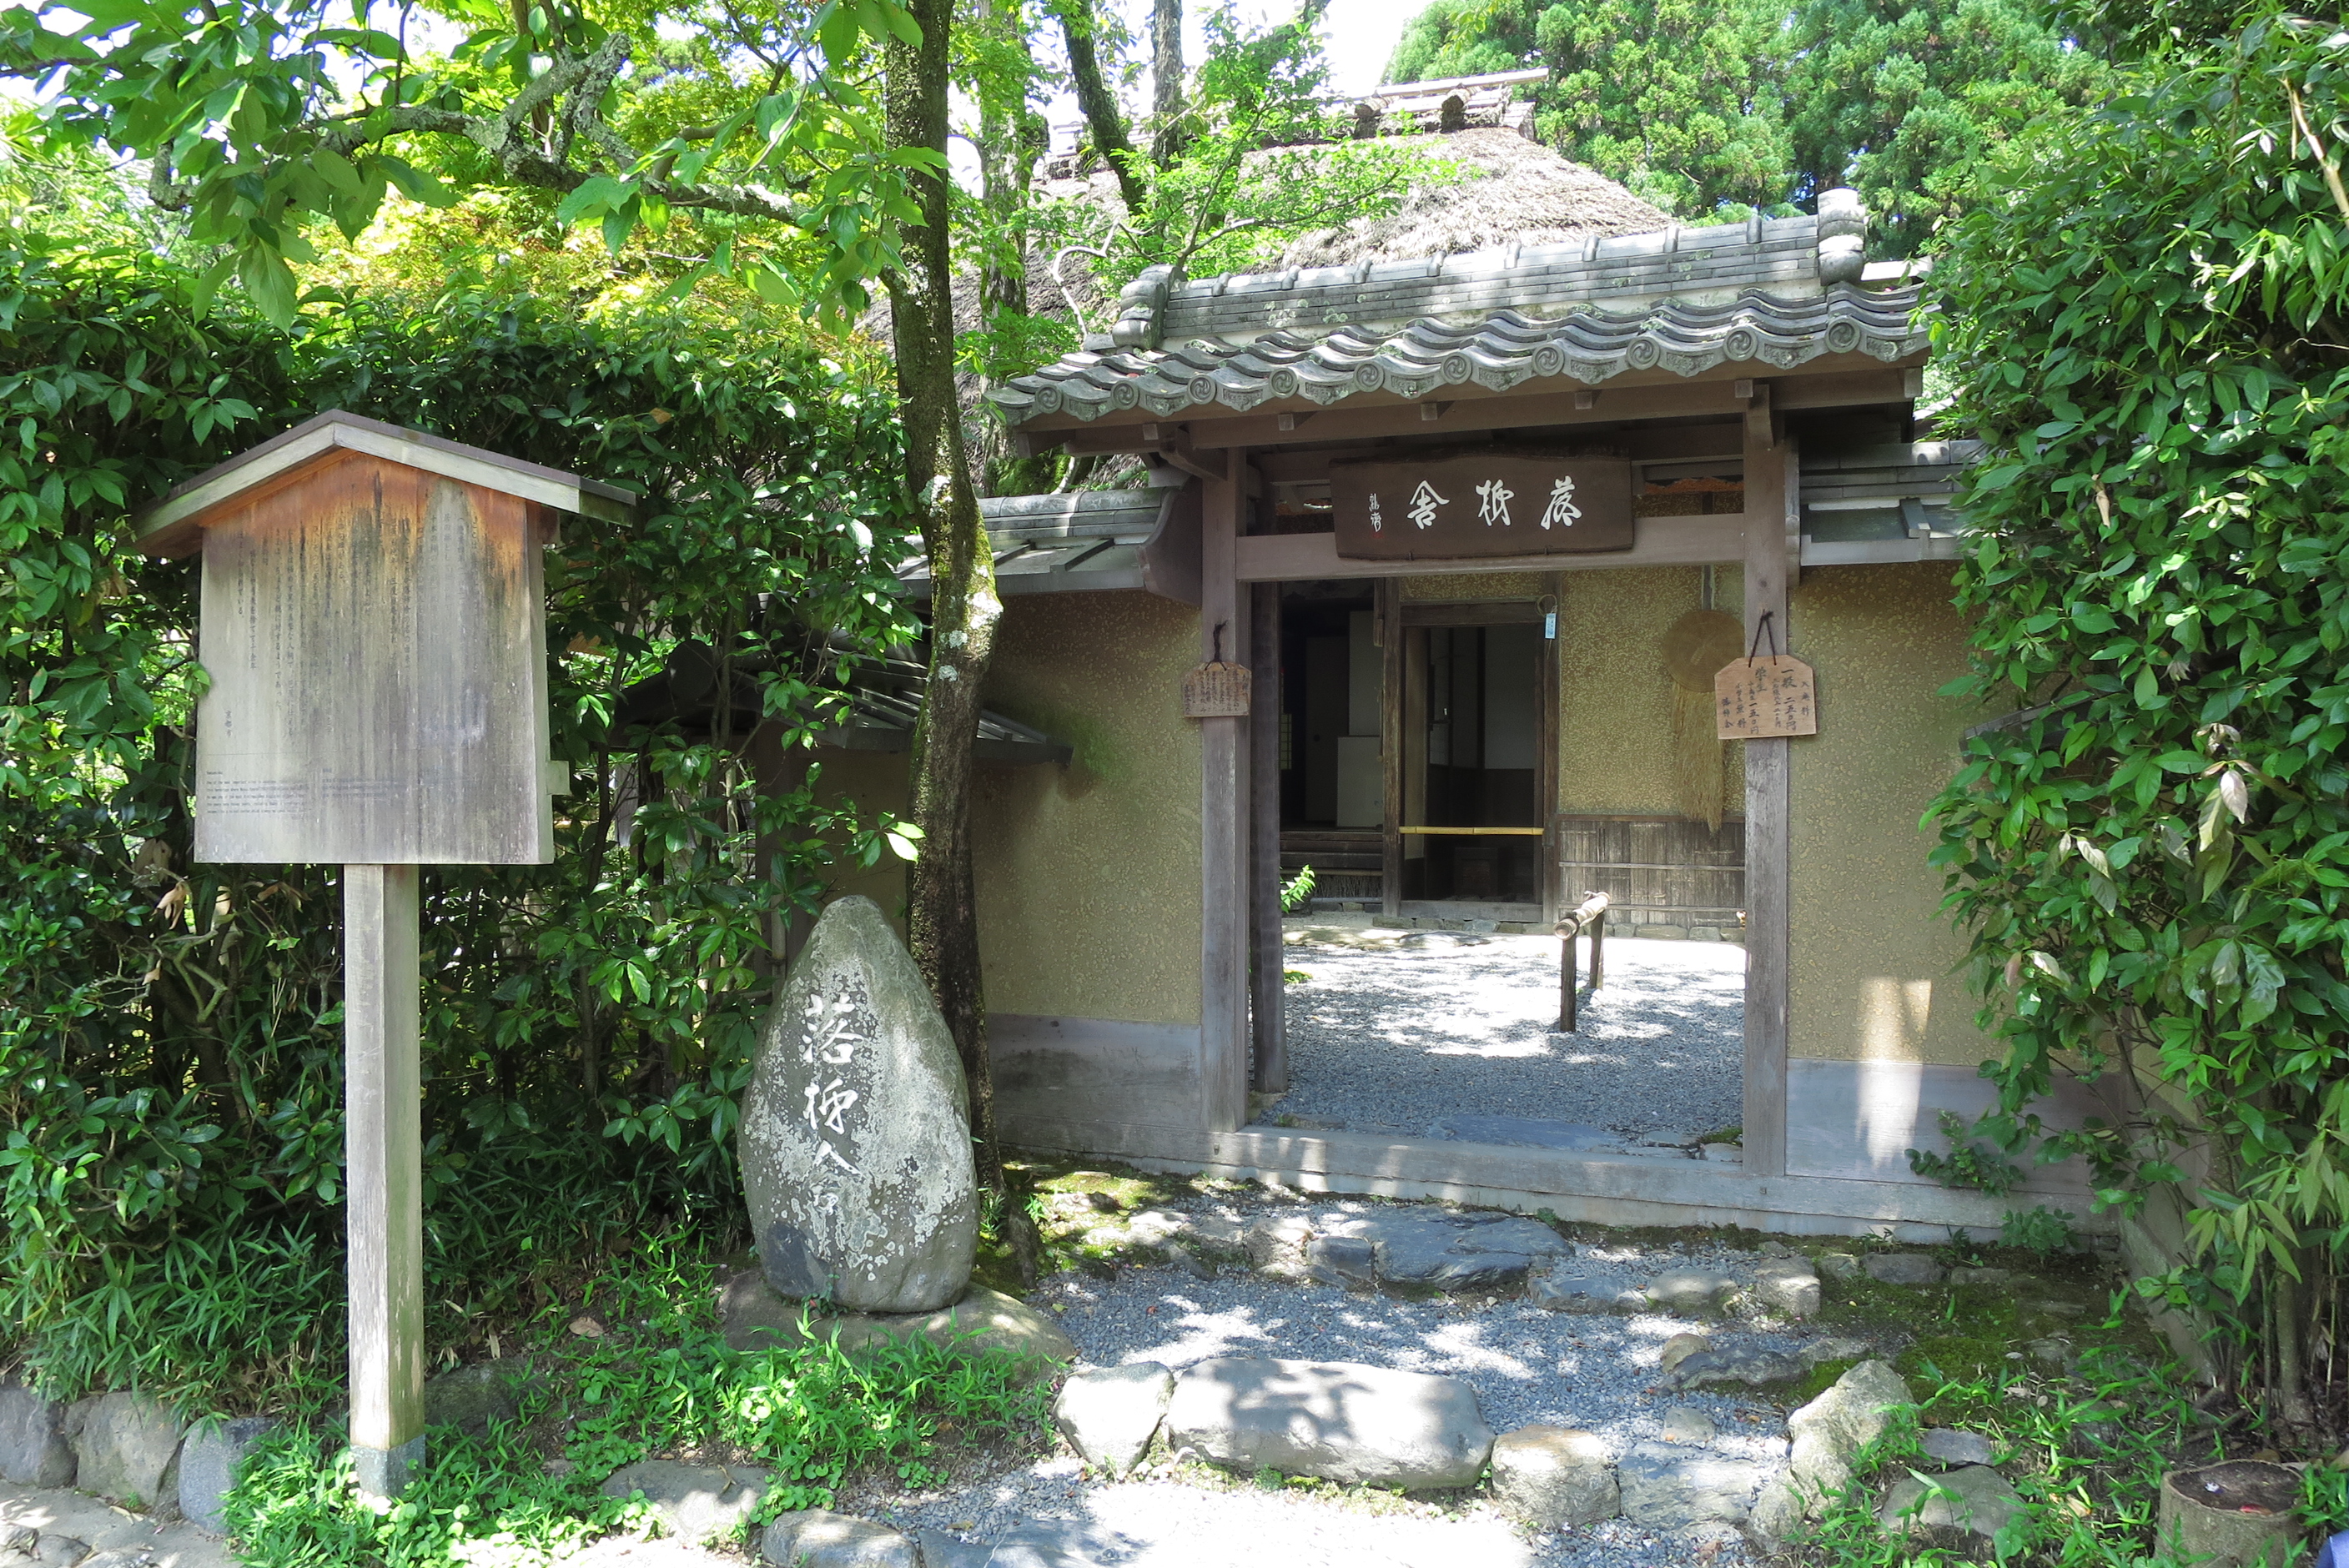 松尾芭蕉の弟子・向井去来が別荘として利用していた落柿舎（らくししゃ）。